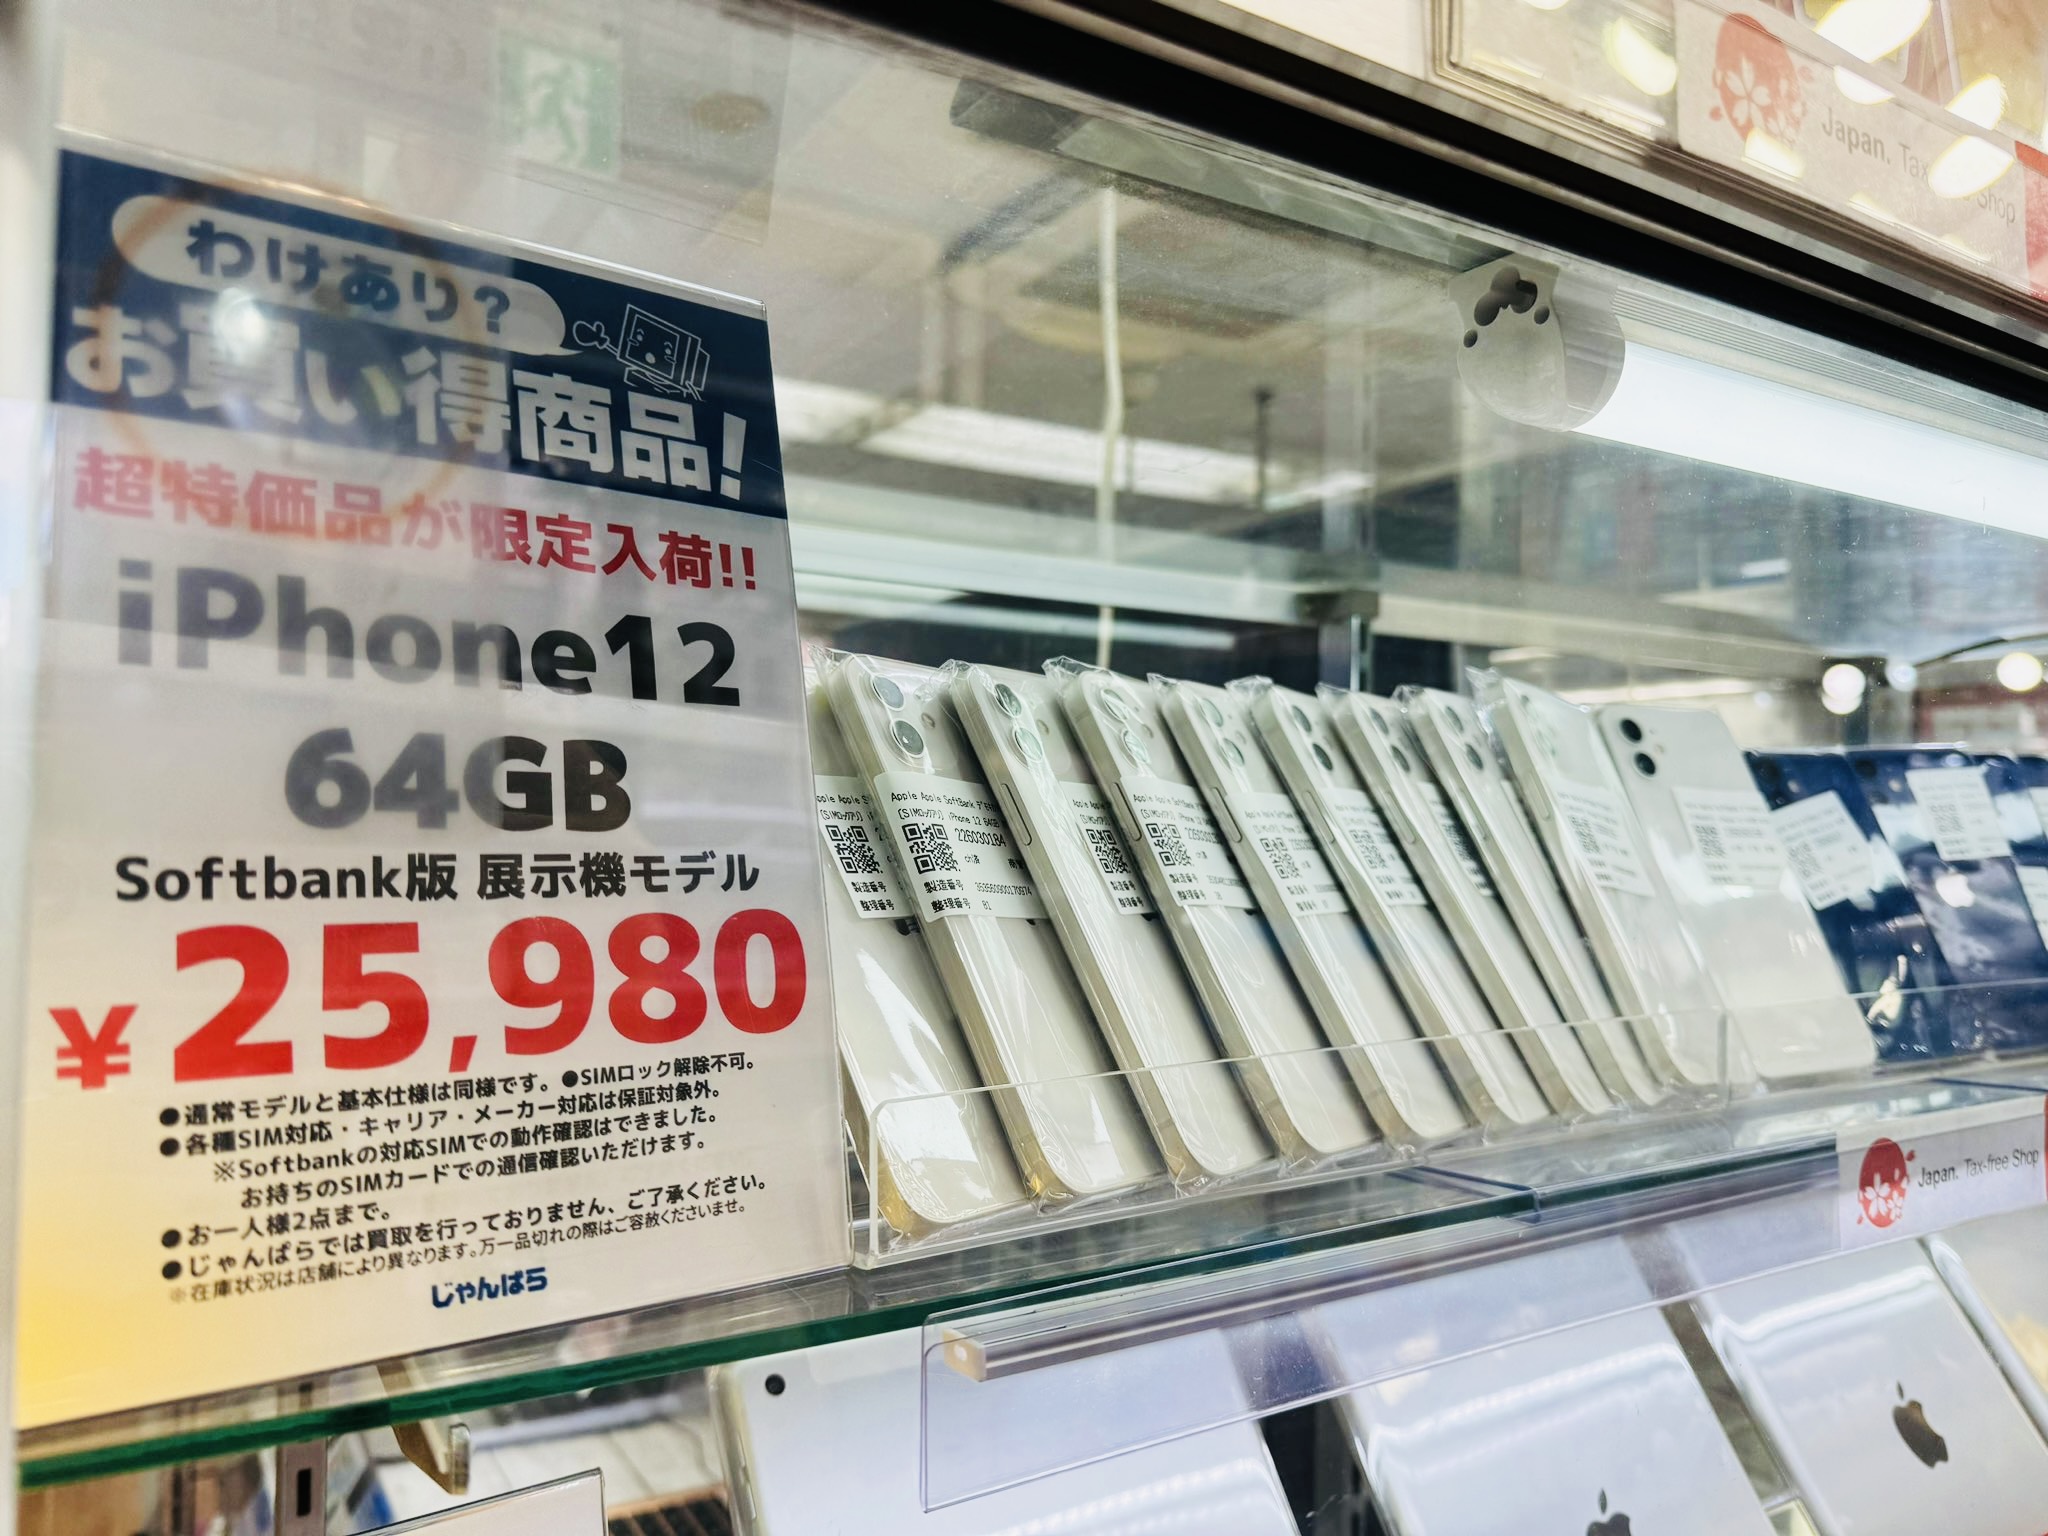 訳あり激安】ソフトバンク iPhone12 64GB 中古品 25,980円【大量入荷 ...